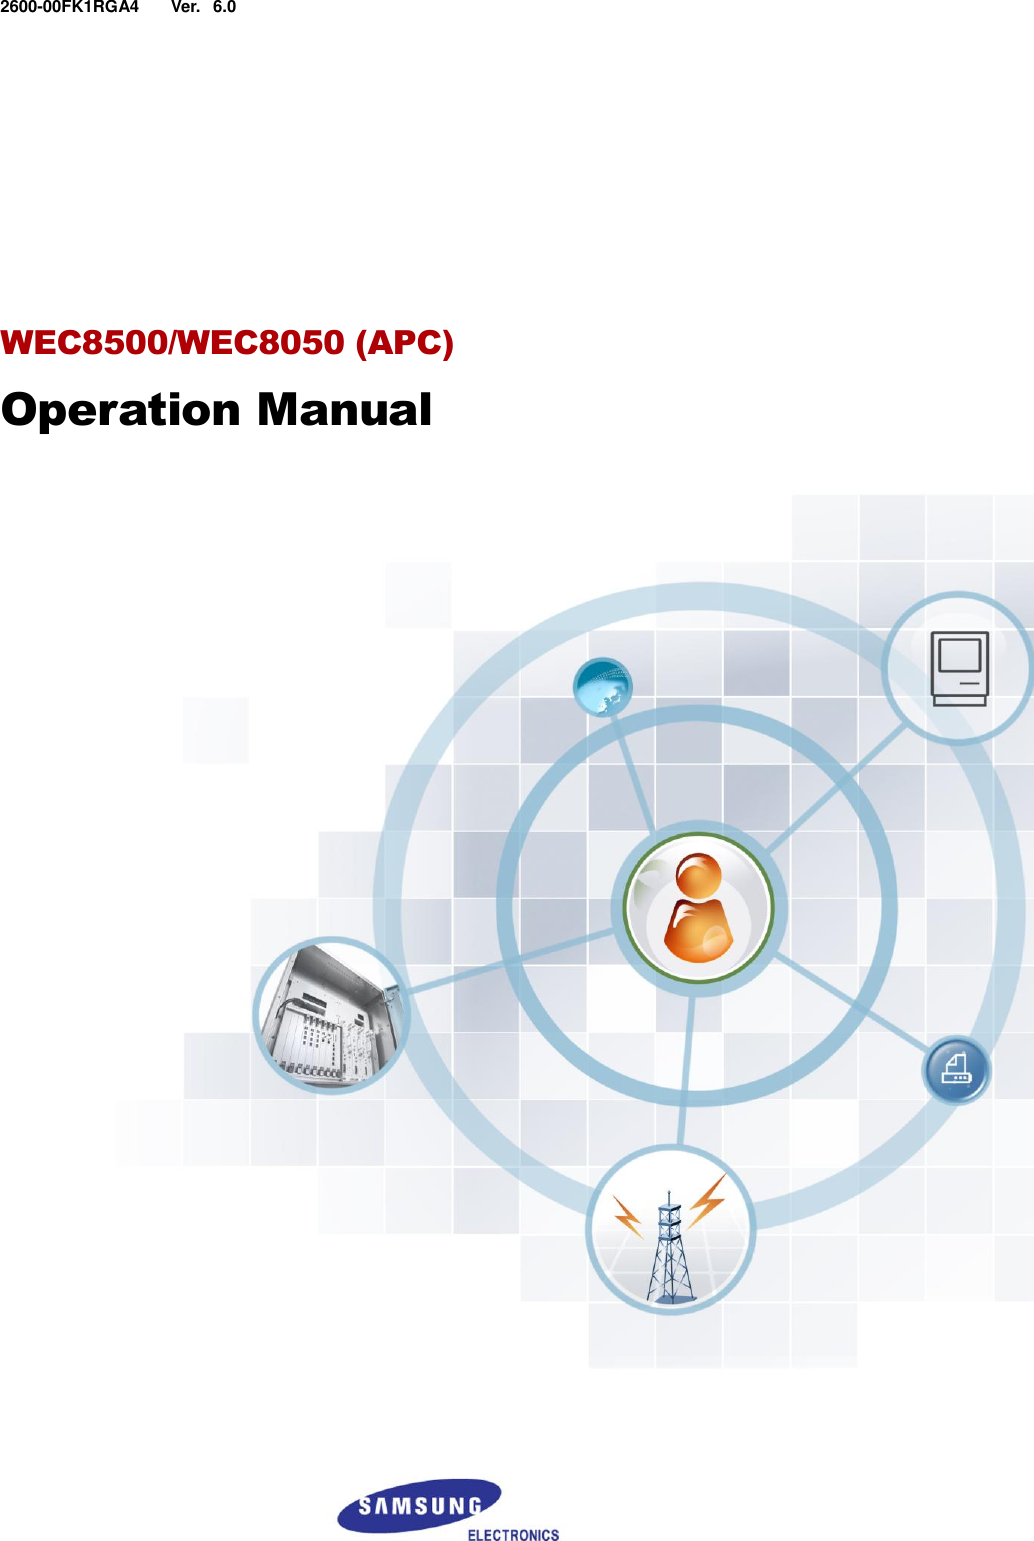  Ver.    2600-00FK1RGA4 6.0        WEC8500/WEC8050 (APC) Operation Manual    